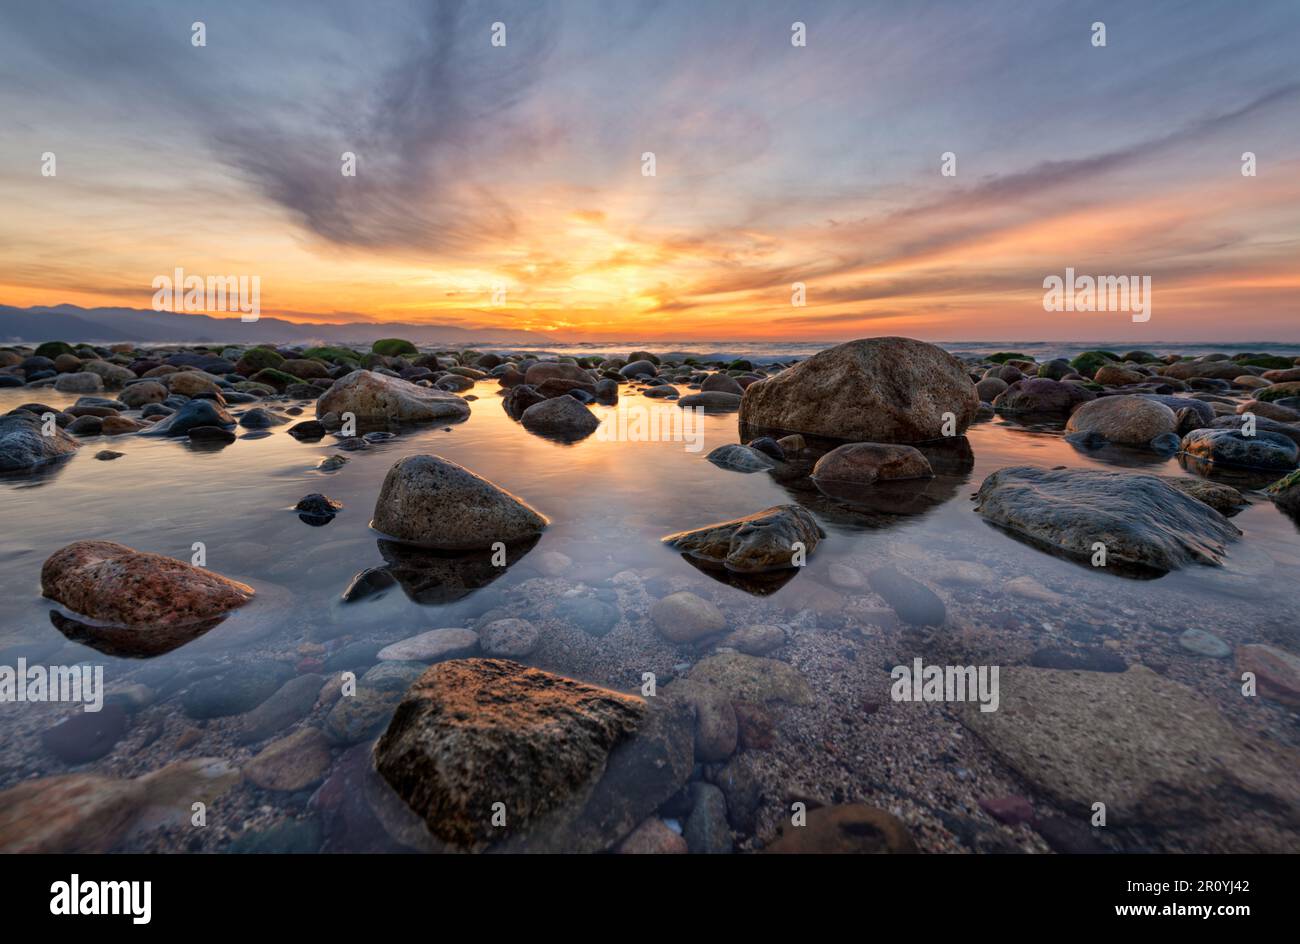 Ein wunderschöner Sonnenuntergang am Meer mit Sea Rocks in Einem Tide Pool High Resolution Stockfoto